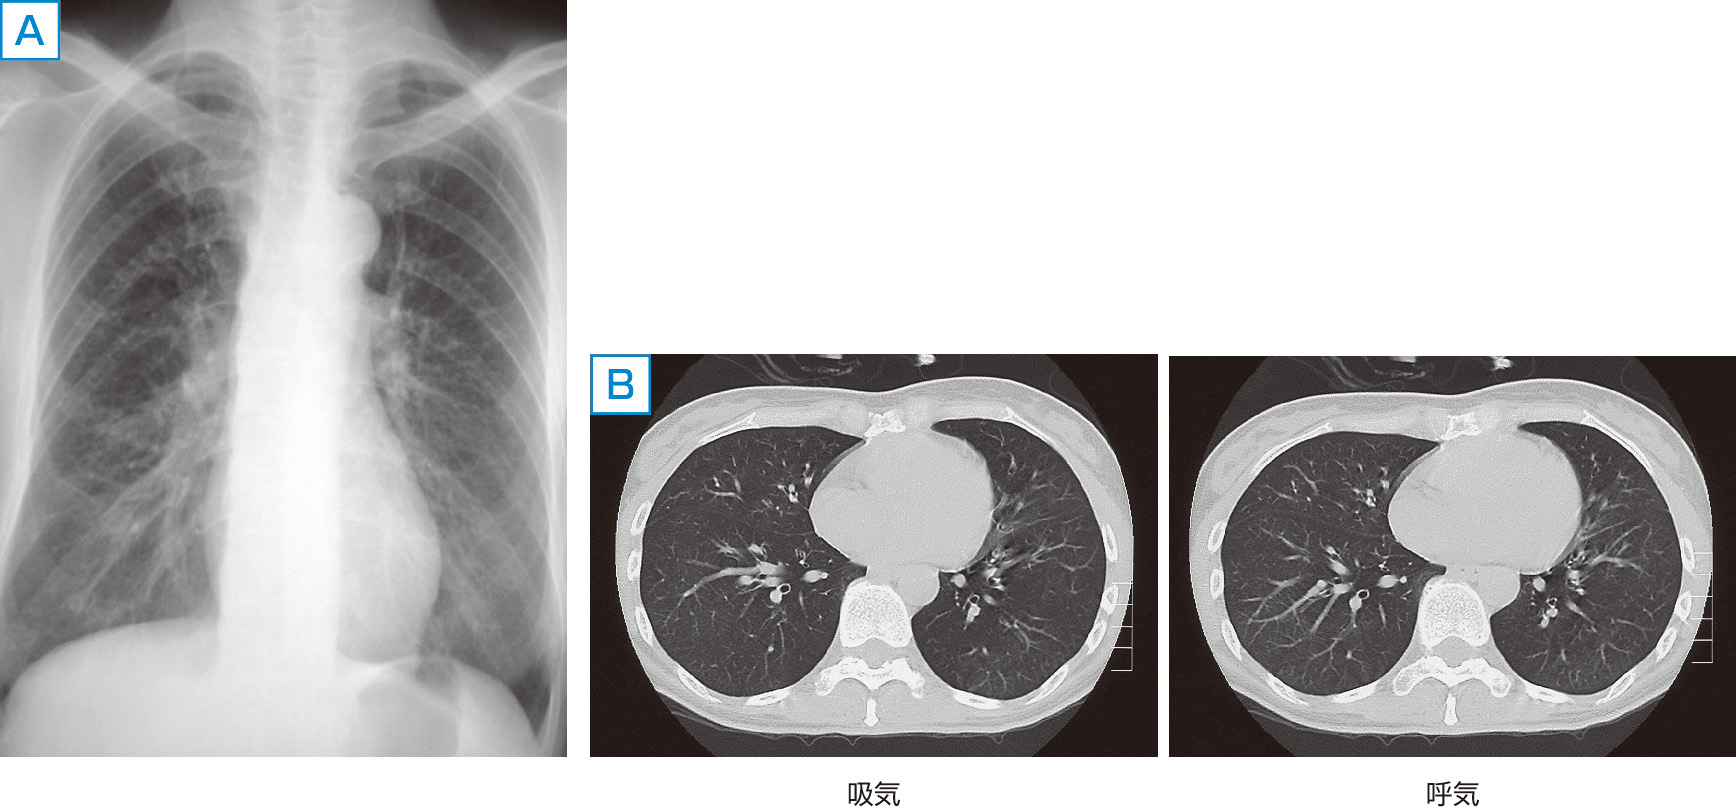 ⓔ図10-3-3　BOの画像所見 A：BOの胸部X線像．ほぼ正常か，わずかに過膨張を示す． B：BOの吸気・呼気相での胸部HRCT像．呼気相HRCTでの空気とらえ込み現象がわずかに認められる．